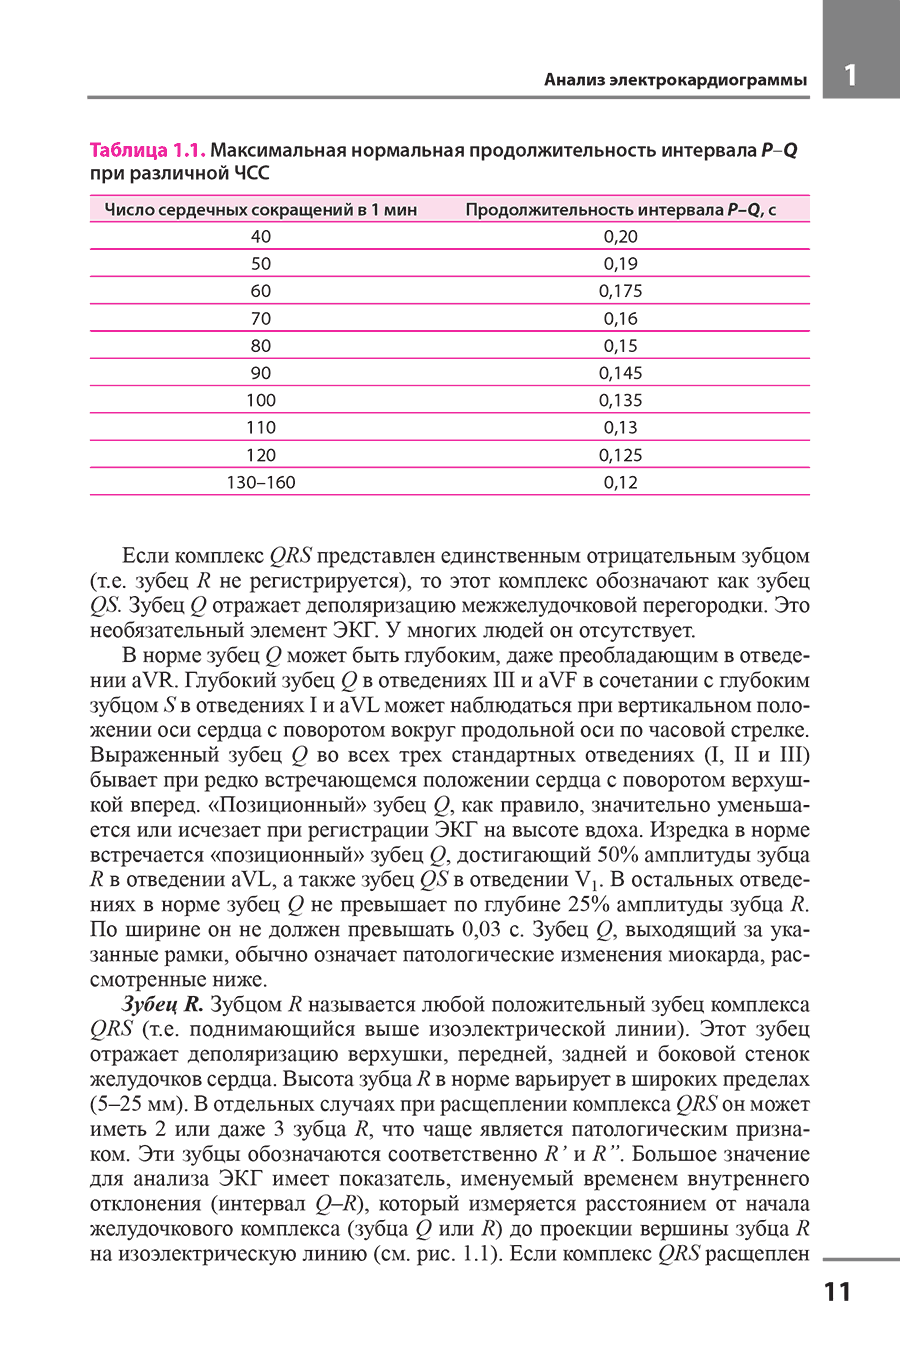 Таблица 1.1. Максимальная нормальная продолжительность интервала P-Q при различной ЧСС